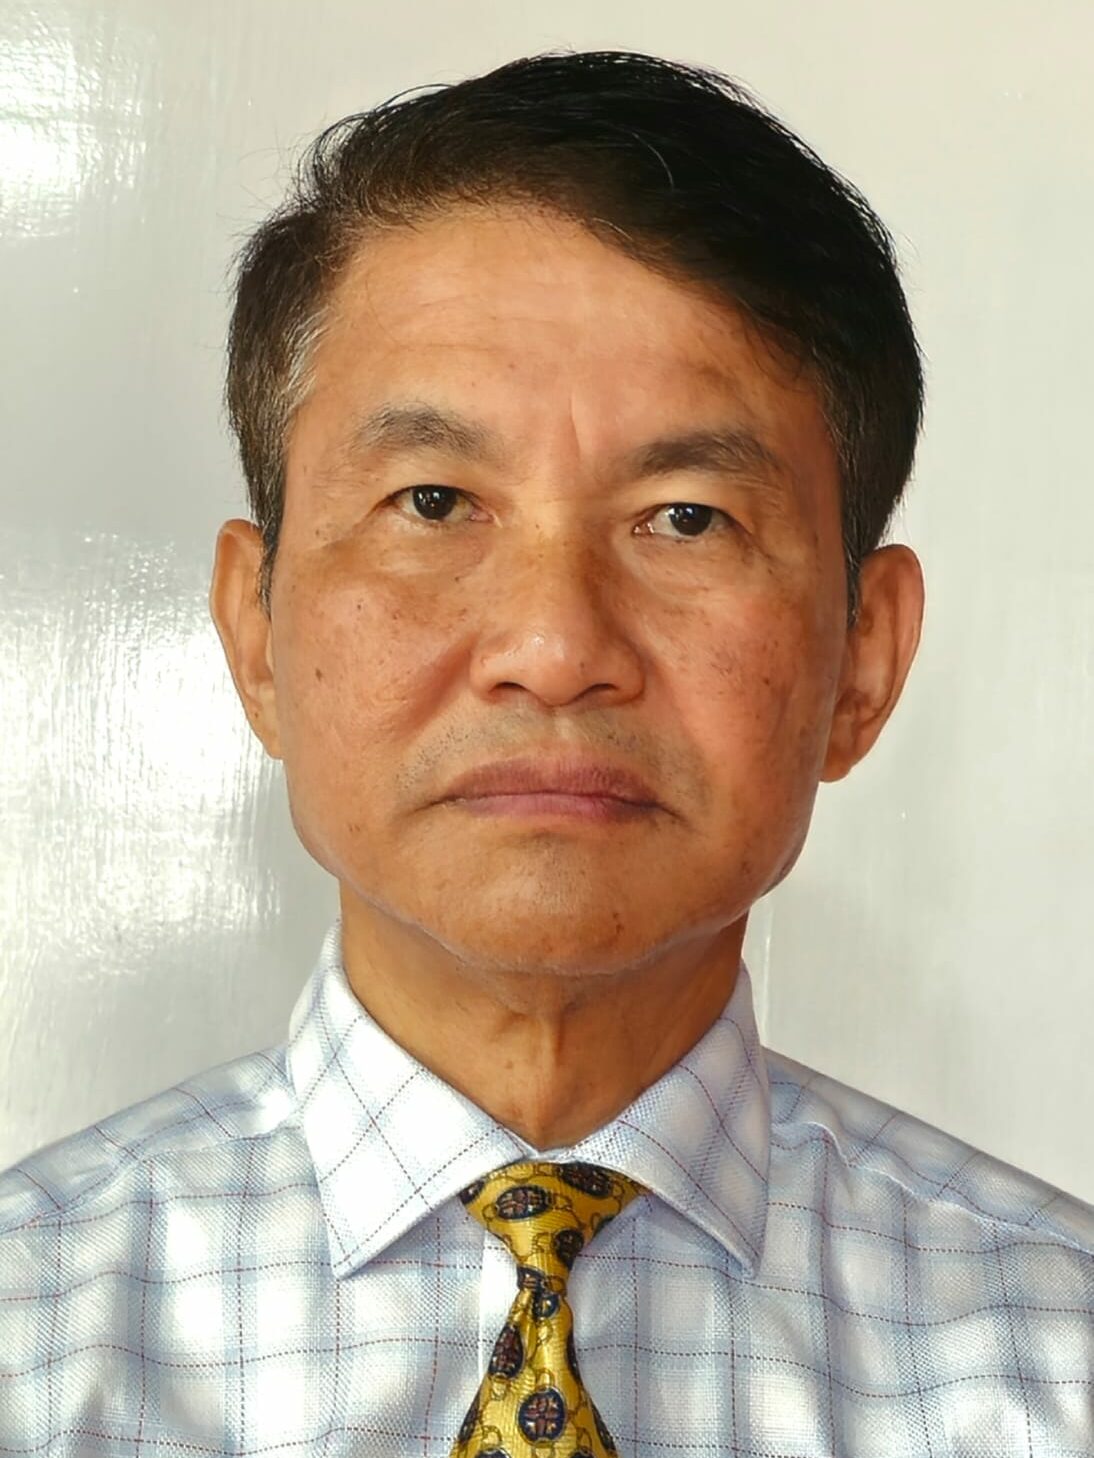 Vice-Chancellor, MTU